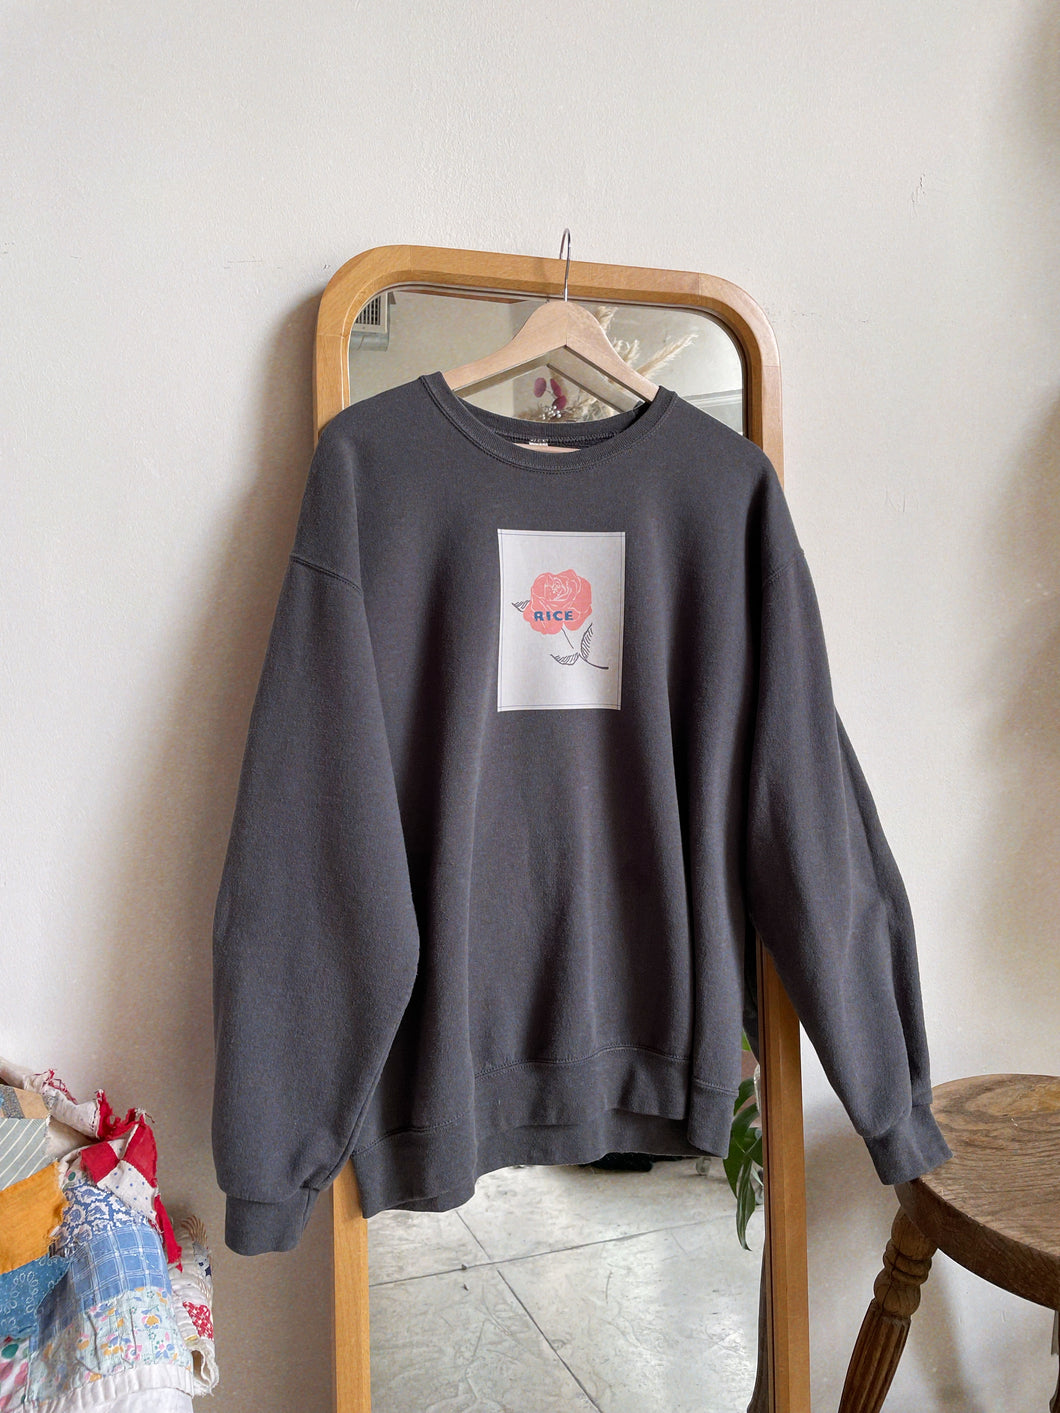 Primary Rose Sweatshirt Charcoal Grey